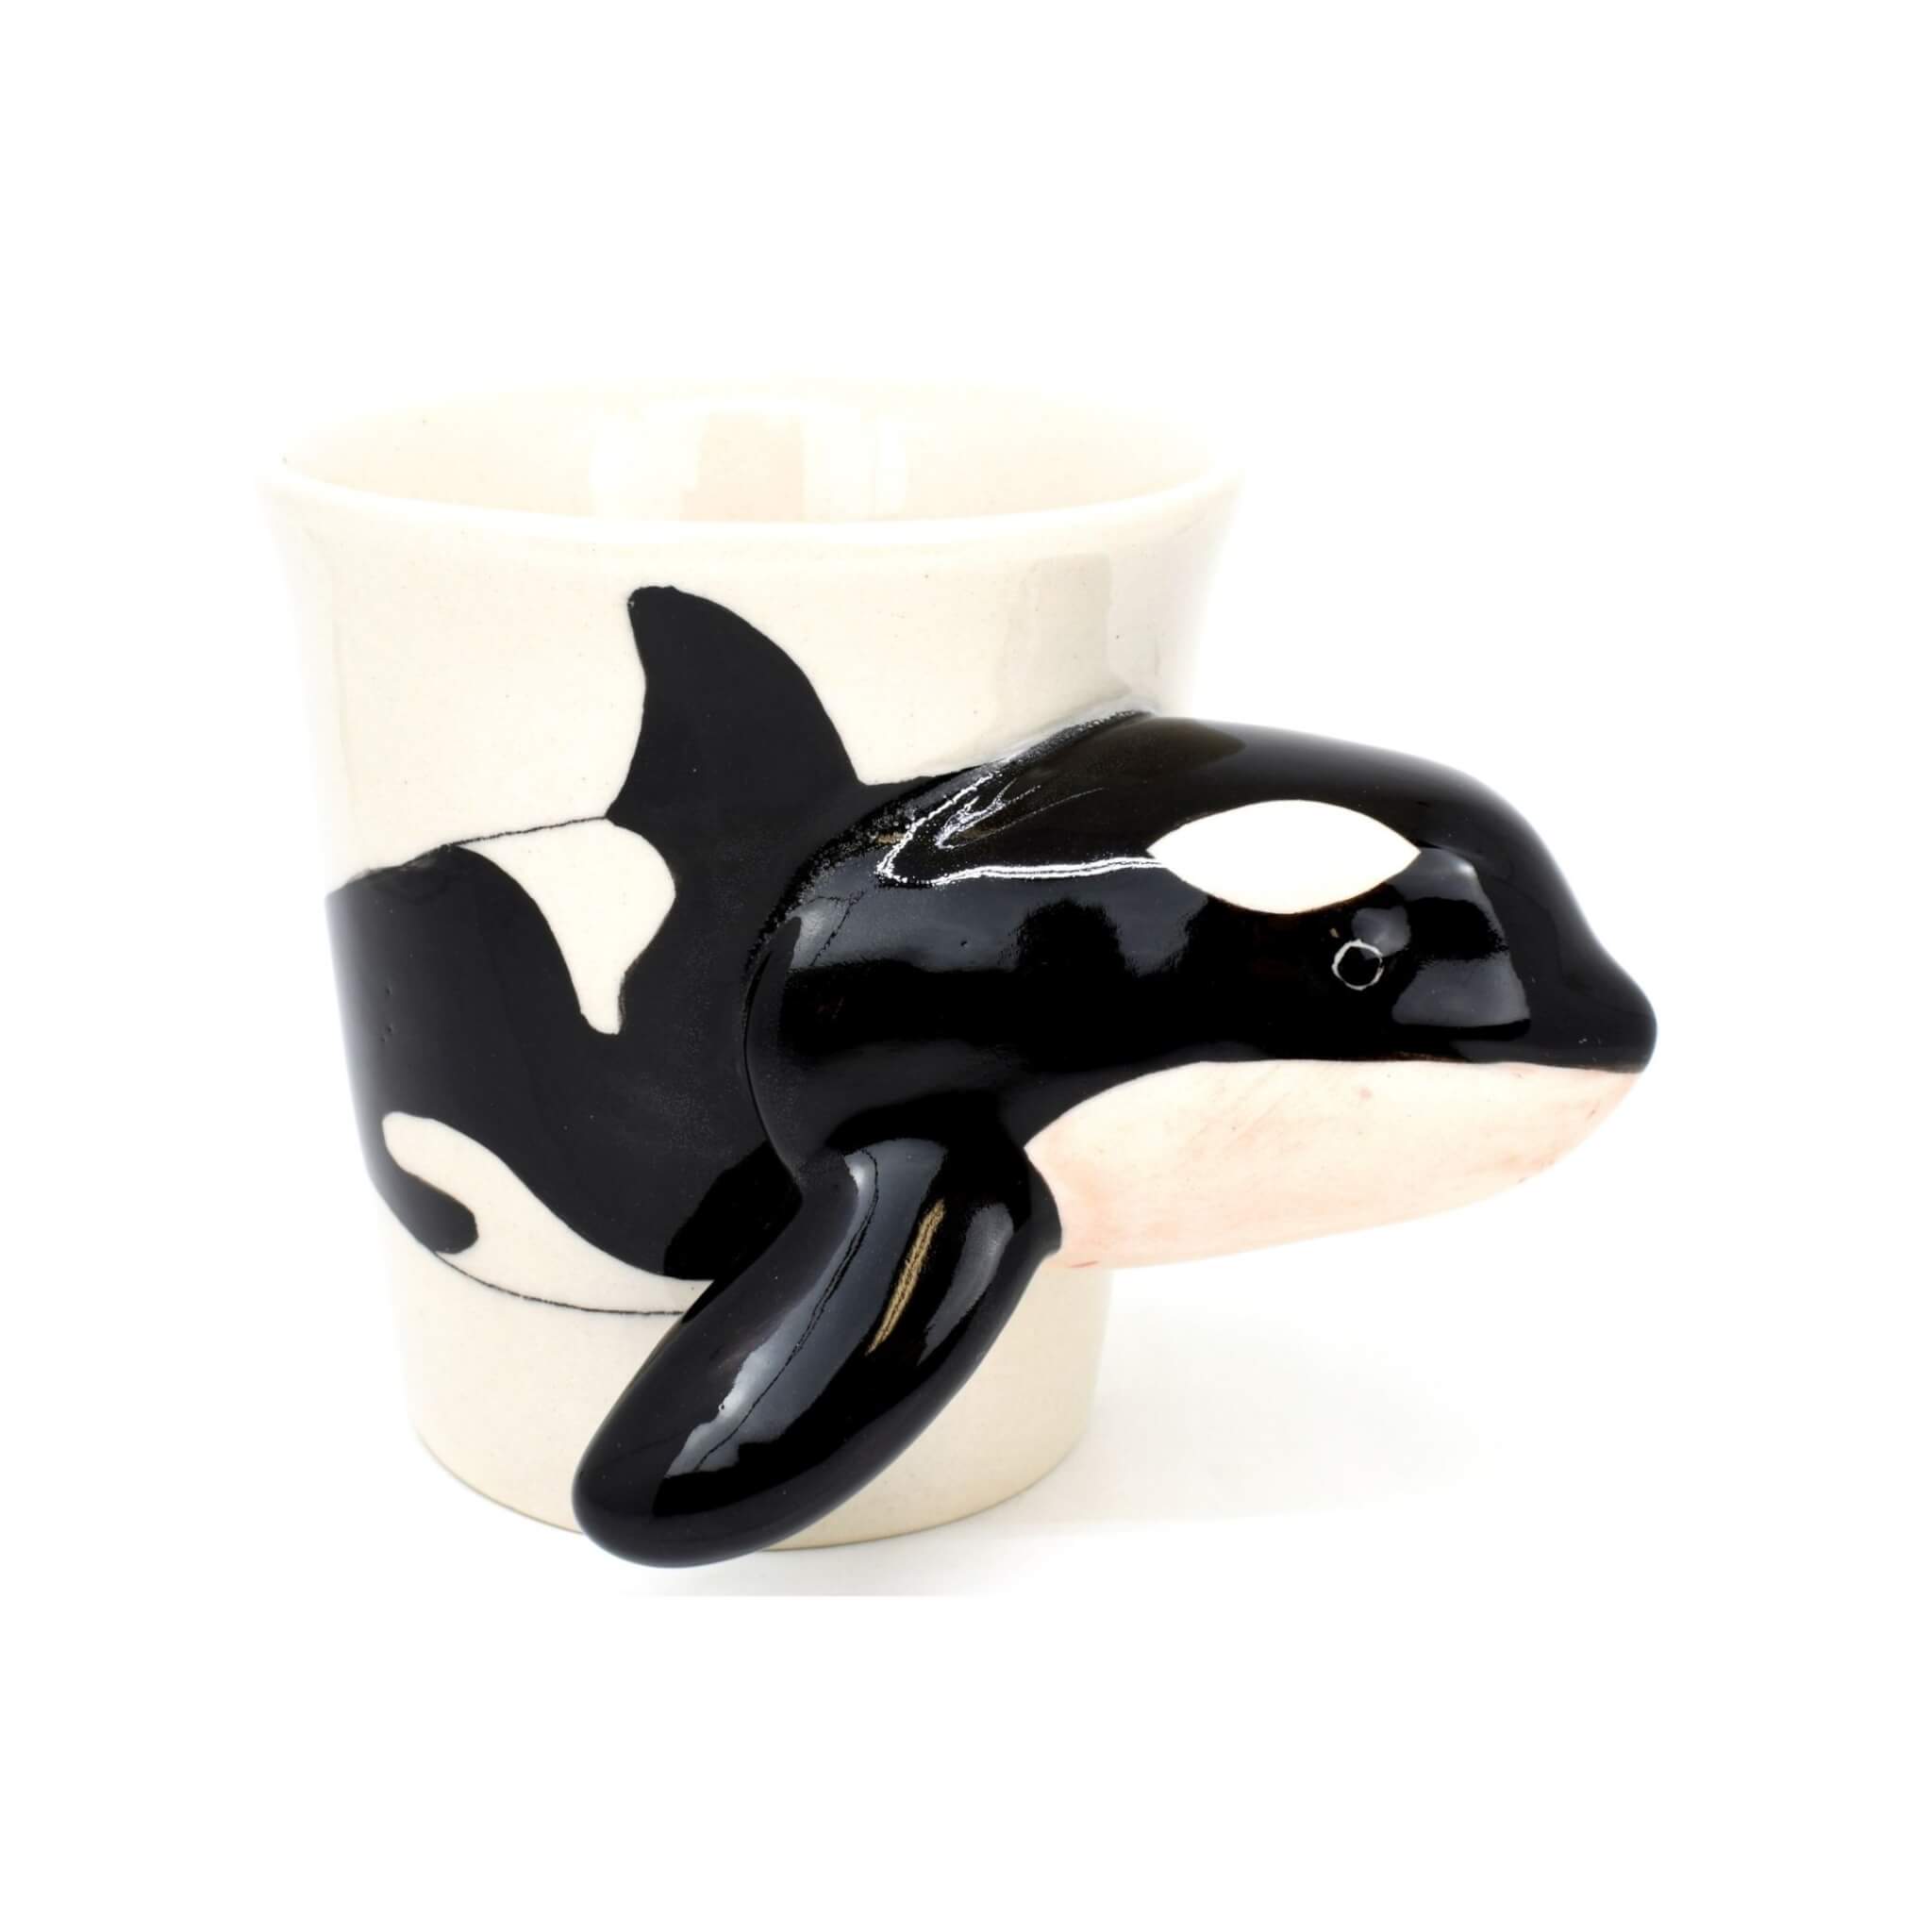 Killer Whale: Mug – Fringe Focus